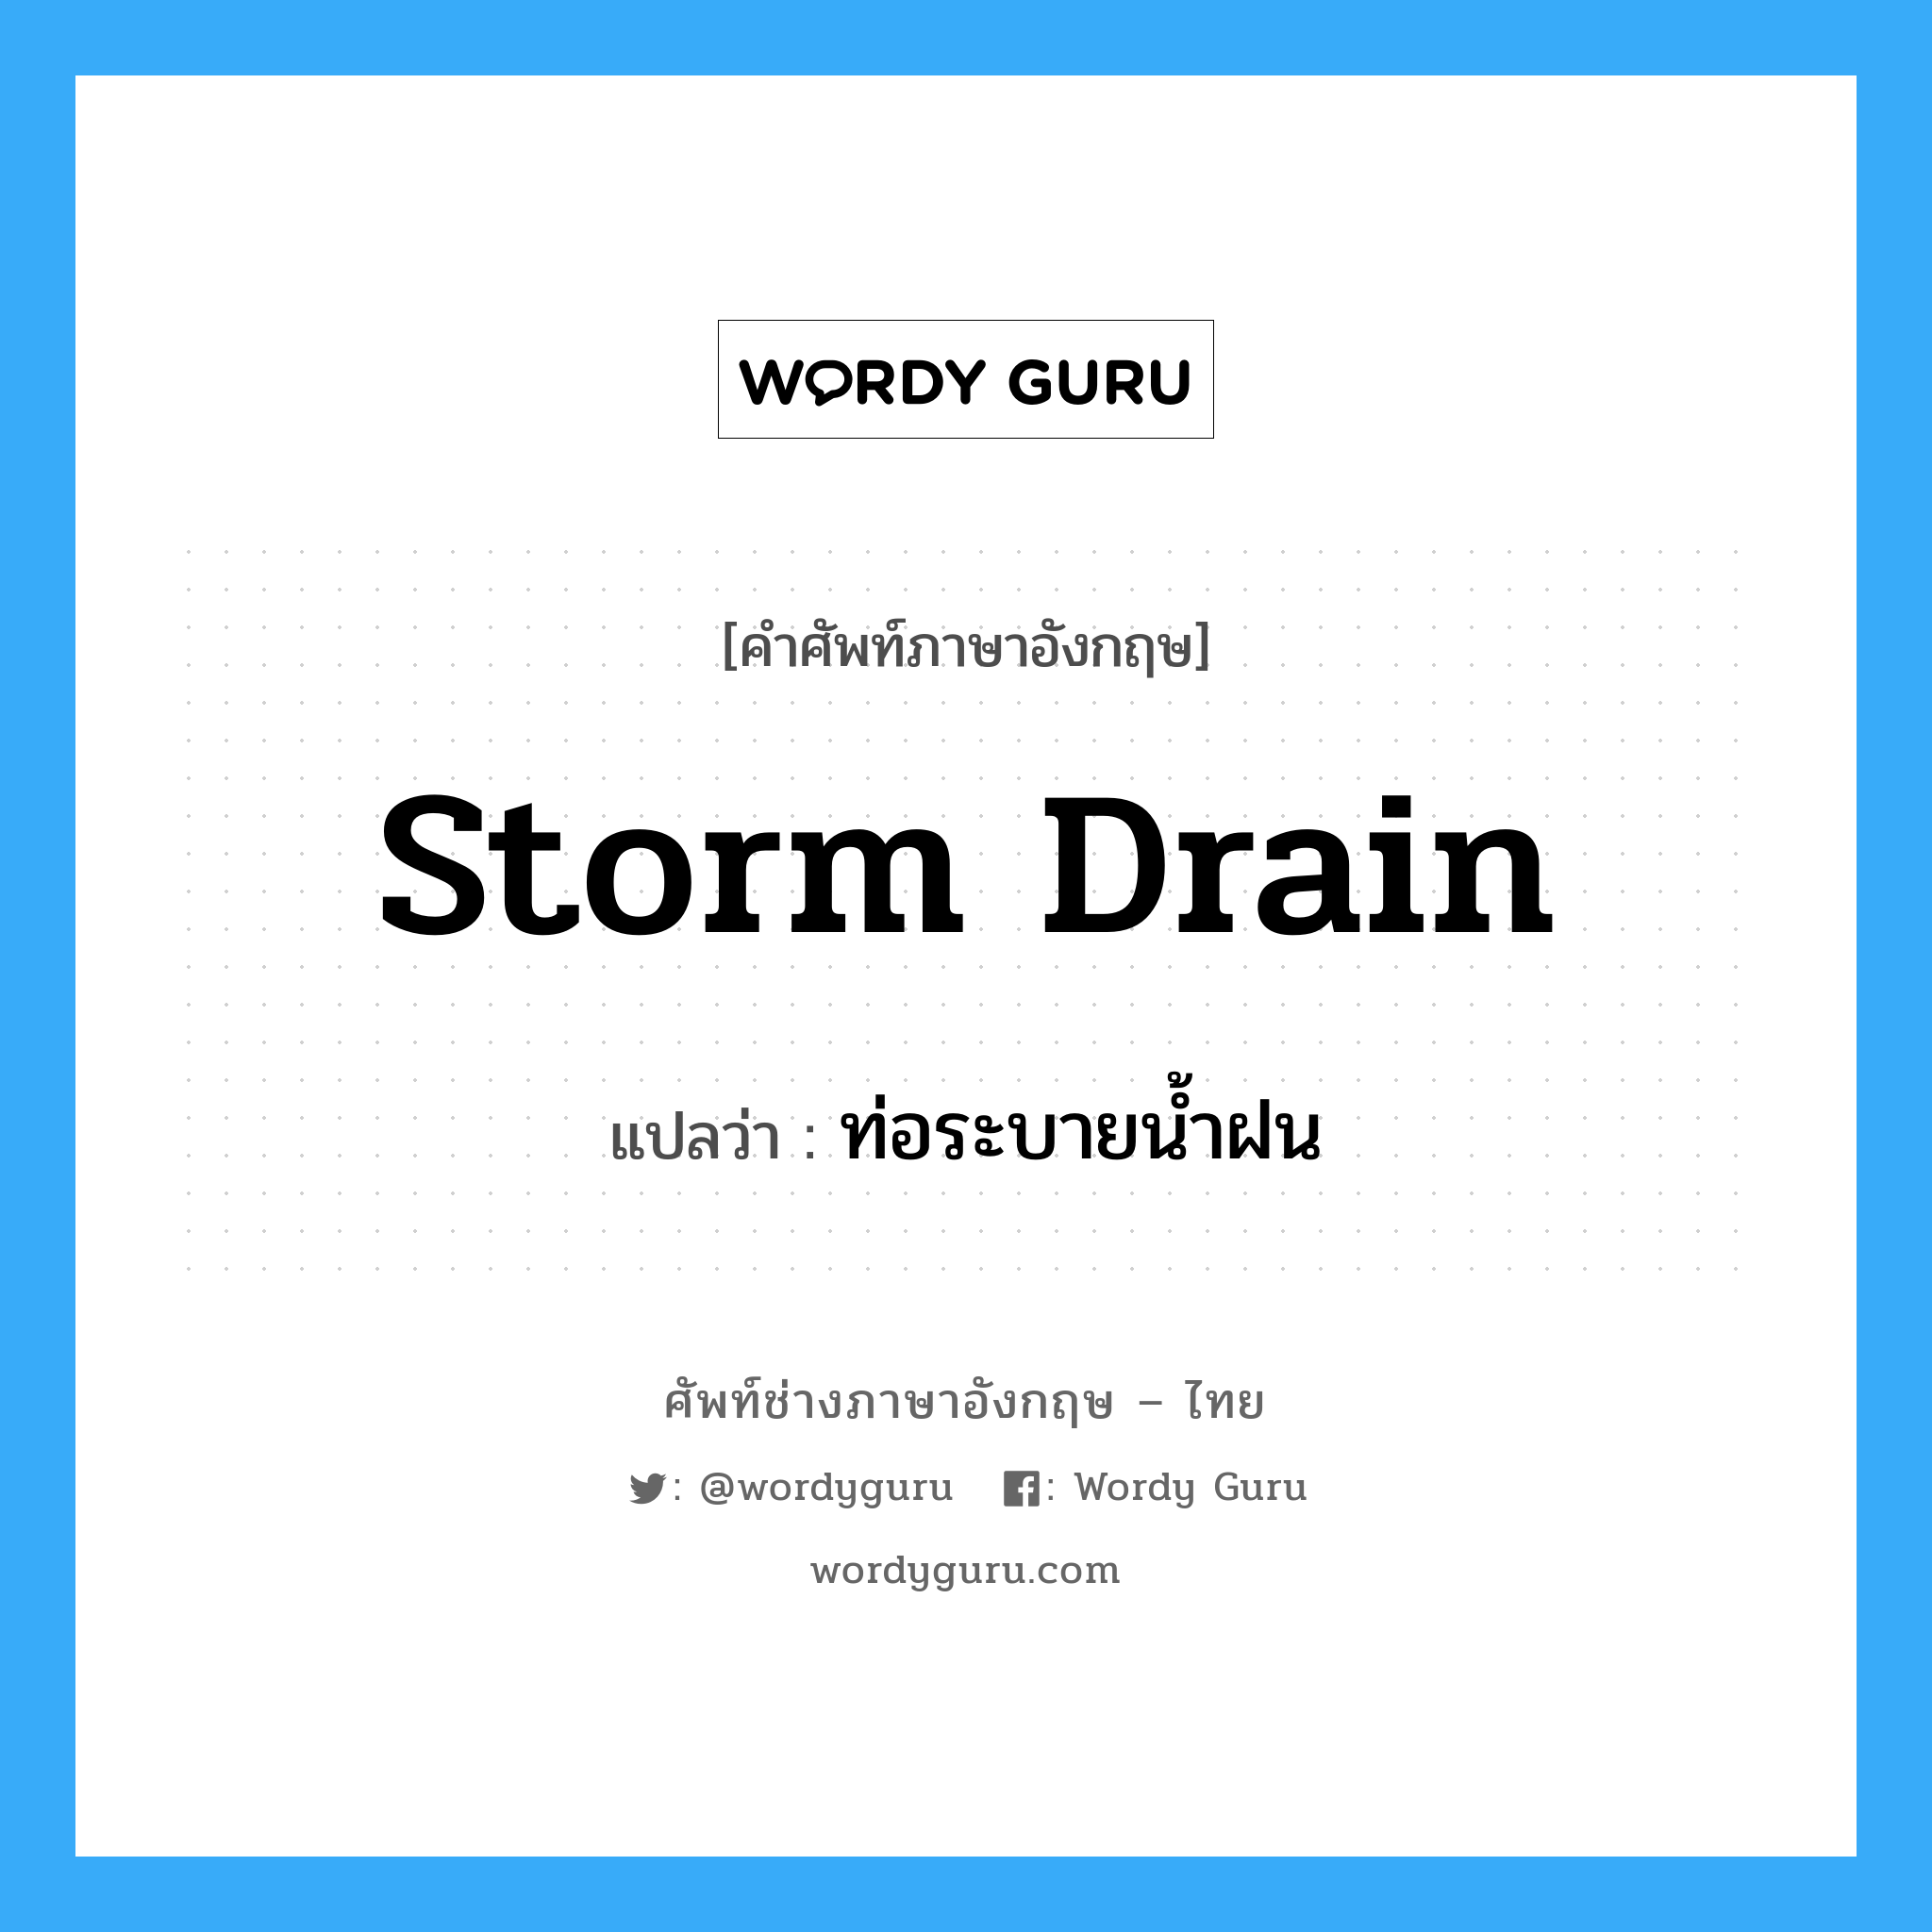 storm drain แปลว่า?, คำศัพท์ช่างภาษาอังกฤษ - ไทย storm drain คำศัพท์ภาษาอังกฤษ storm drain แปลว่า ท่อระบายน้ำฝน